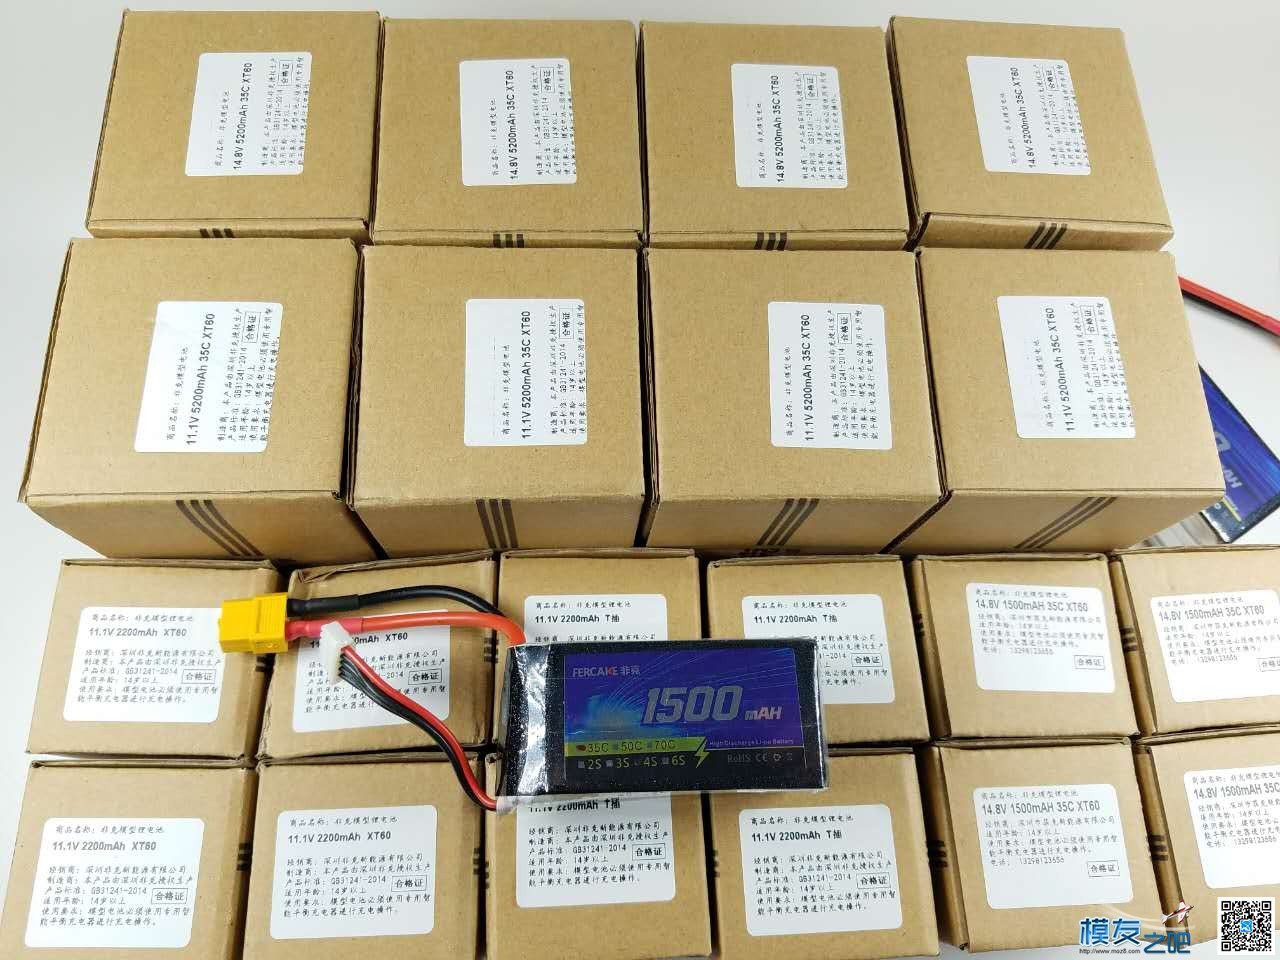 非克电池测试体验活动 电池,非克汽车02,taobao 作者:飞天狼 9345 